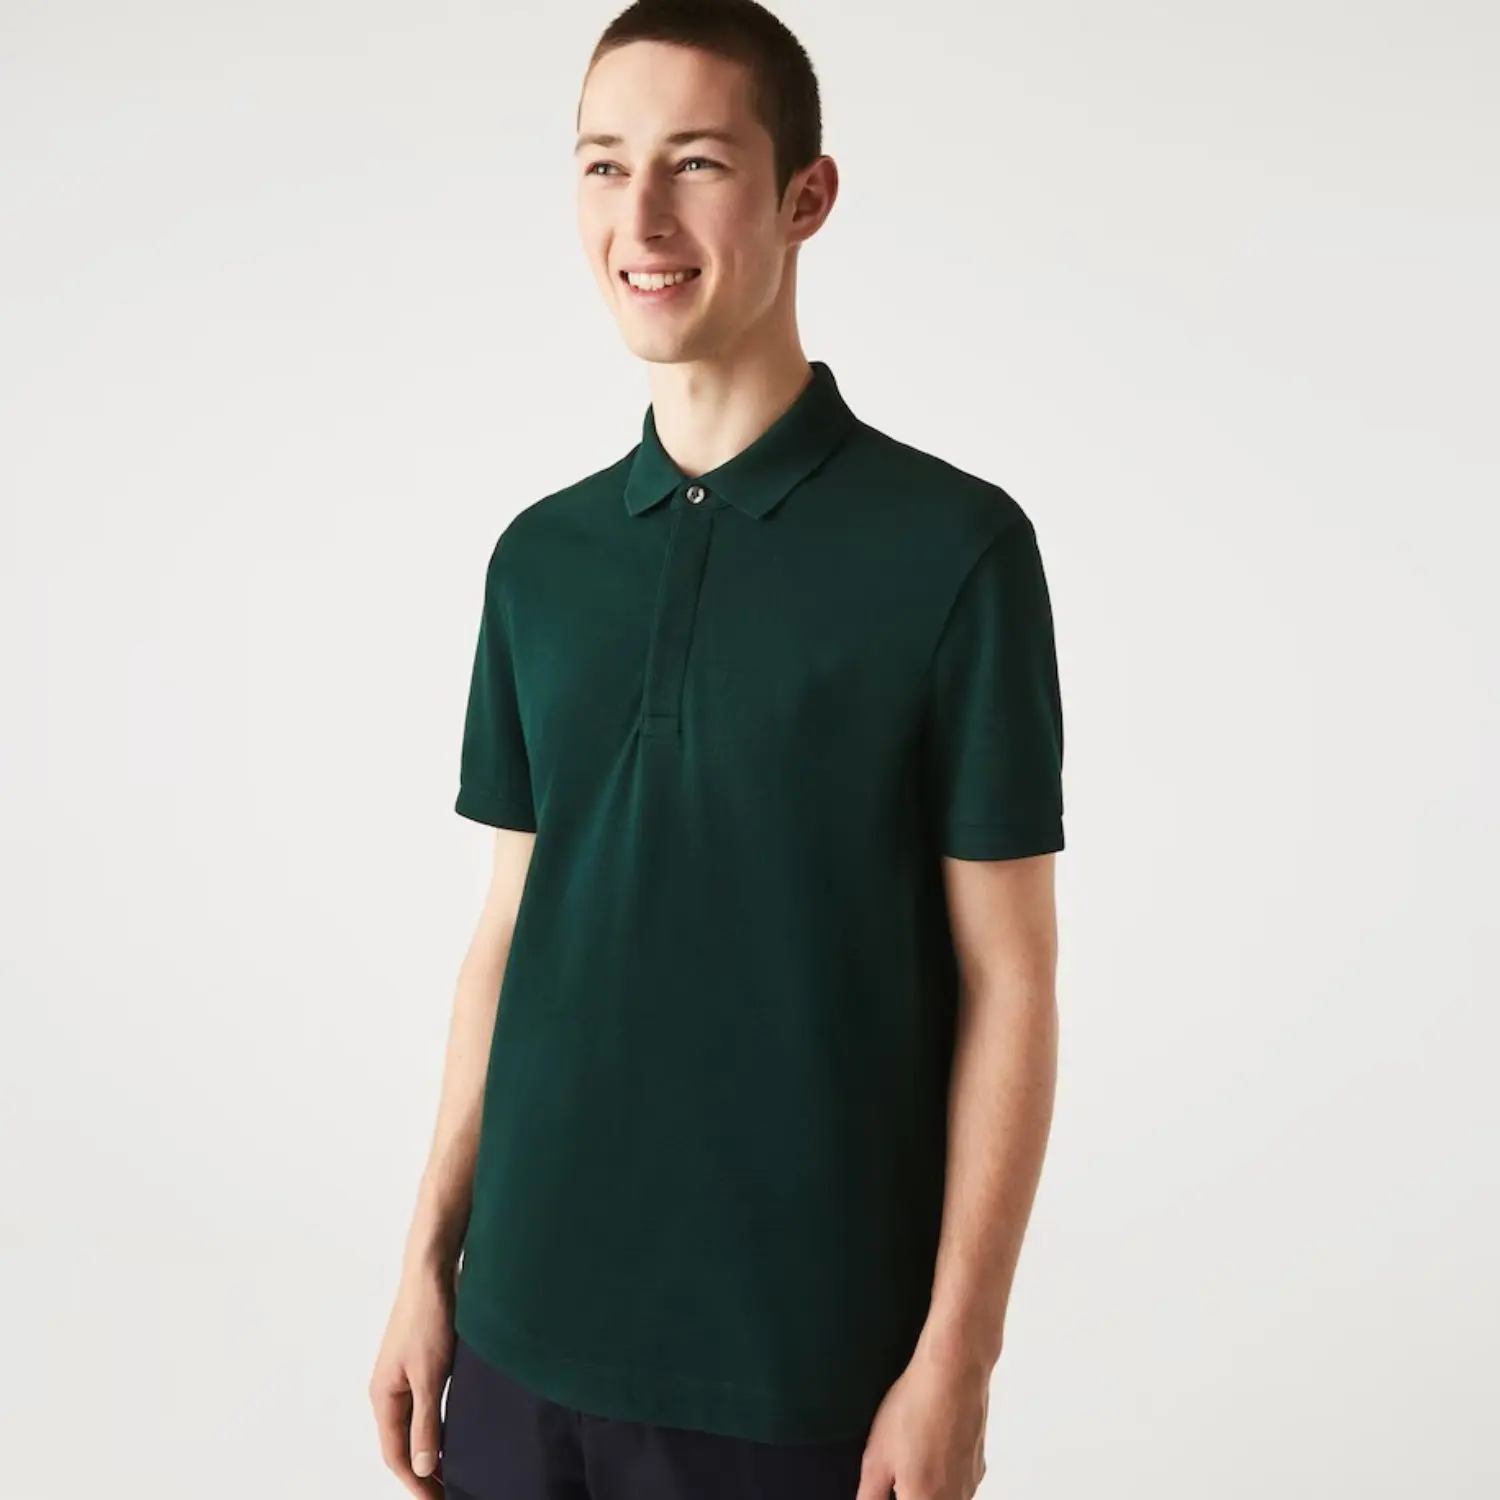 Camisa polo piquê de algodão verde escuro 100% estilo casual com logotipo bordado personalizado, costela com botão oculto, ajuste regular